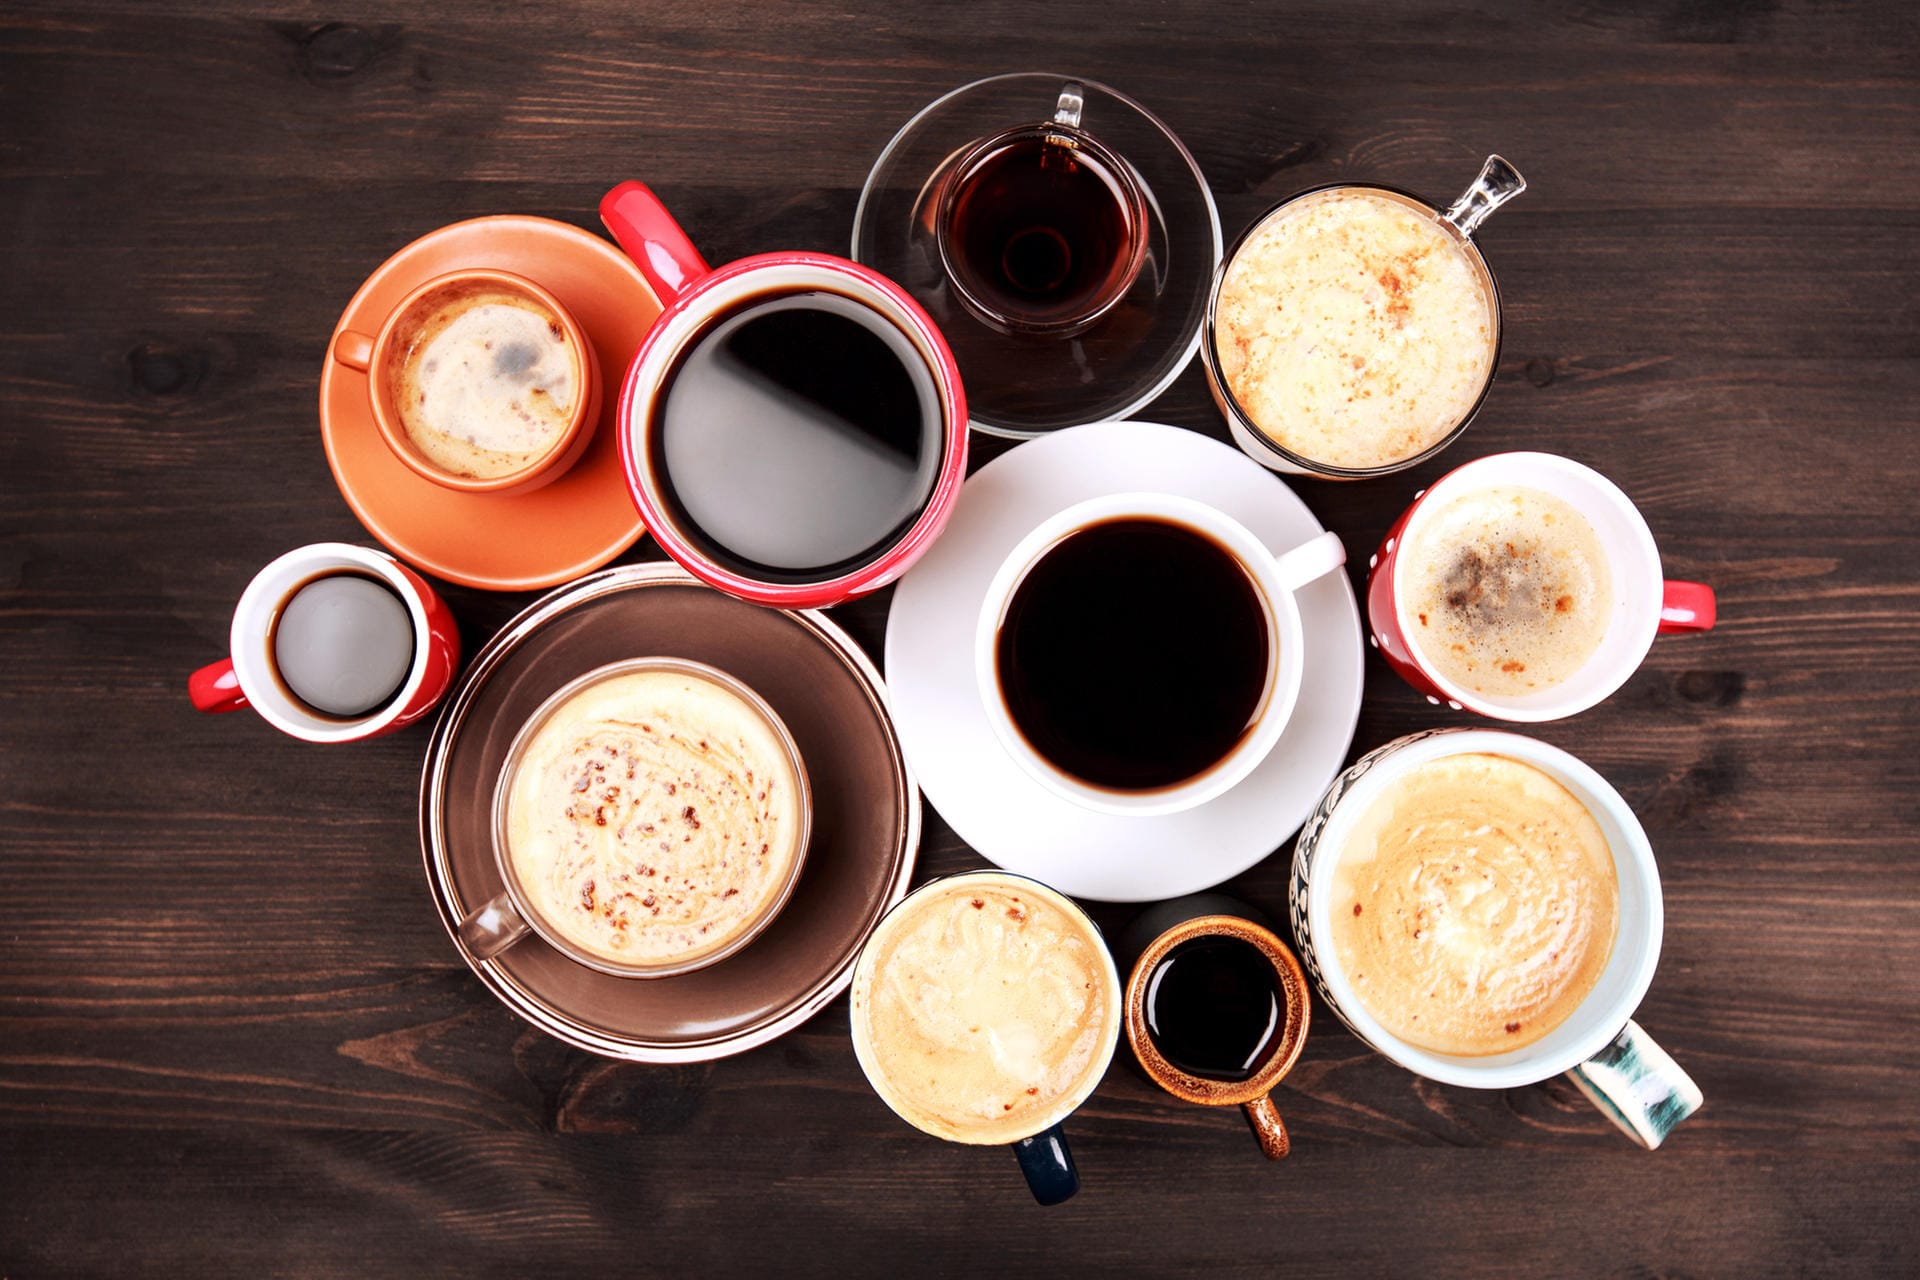 Was passiert, wenn man mehr als vier Tassen Kaffee trinkt? Laut Studien ist das nicht mit einem Schaden verbunden, aber der vorteilhafte Effekt ist dann weniger ausgeprägt.